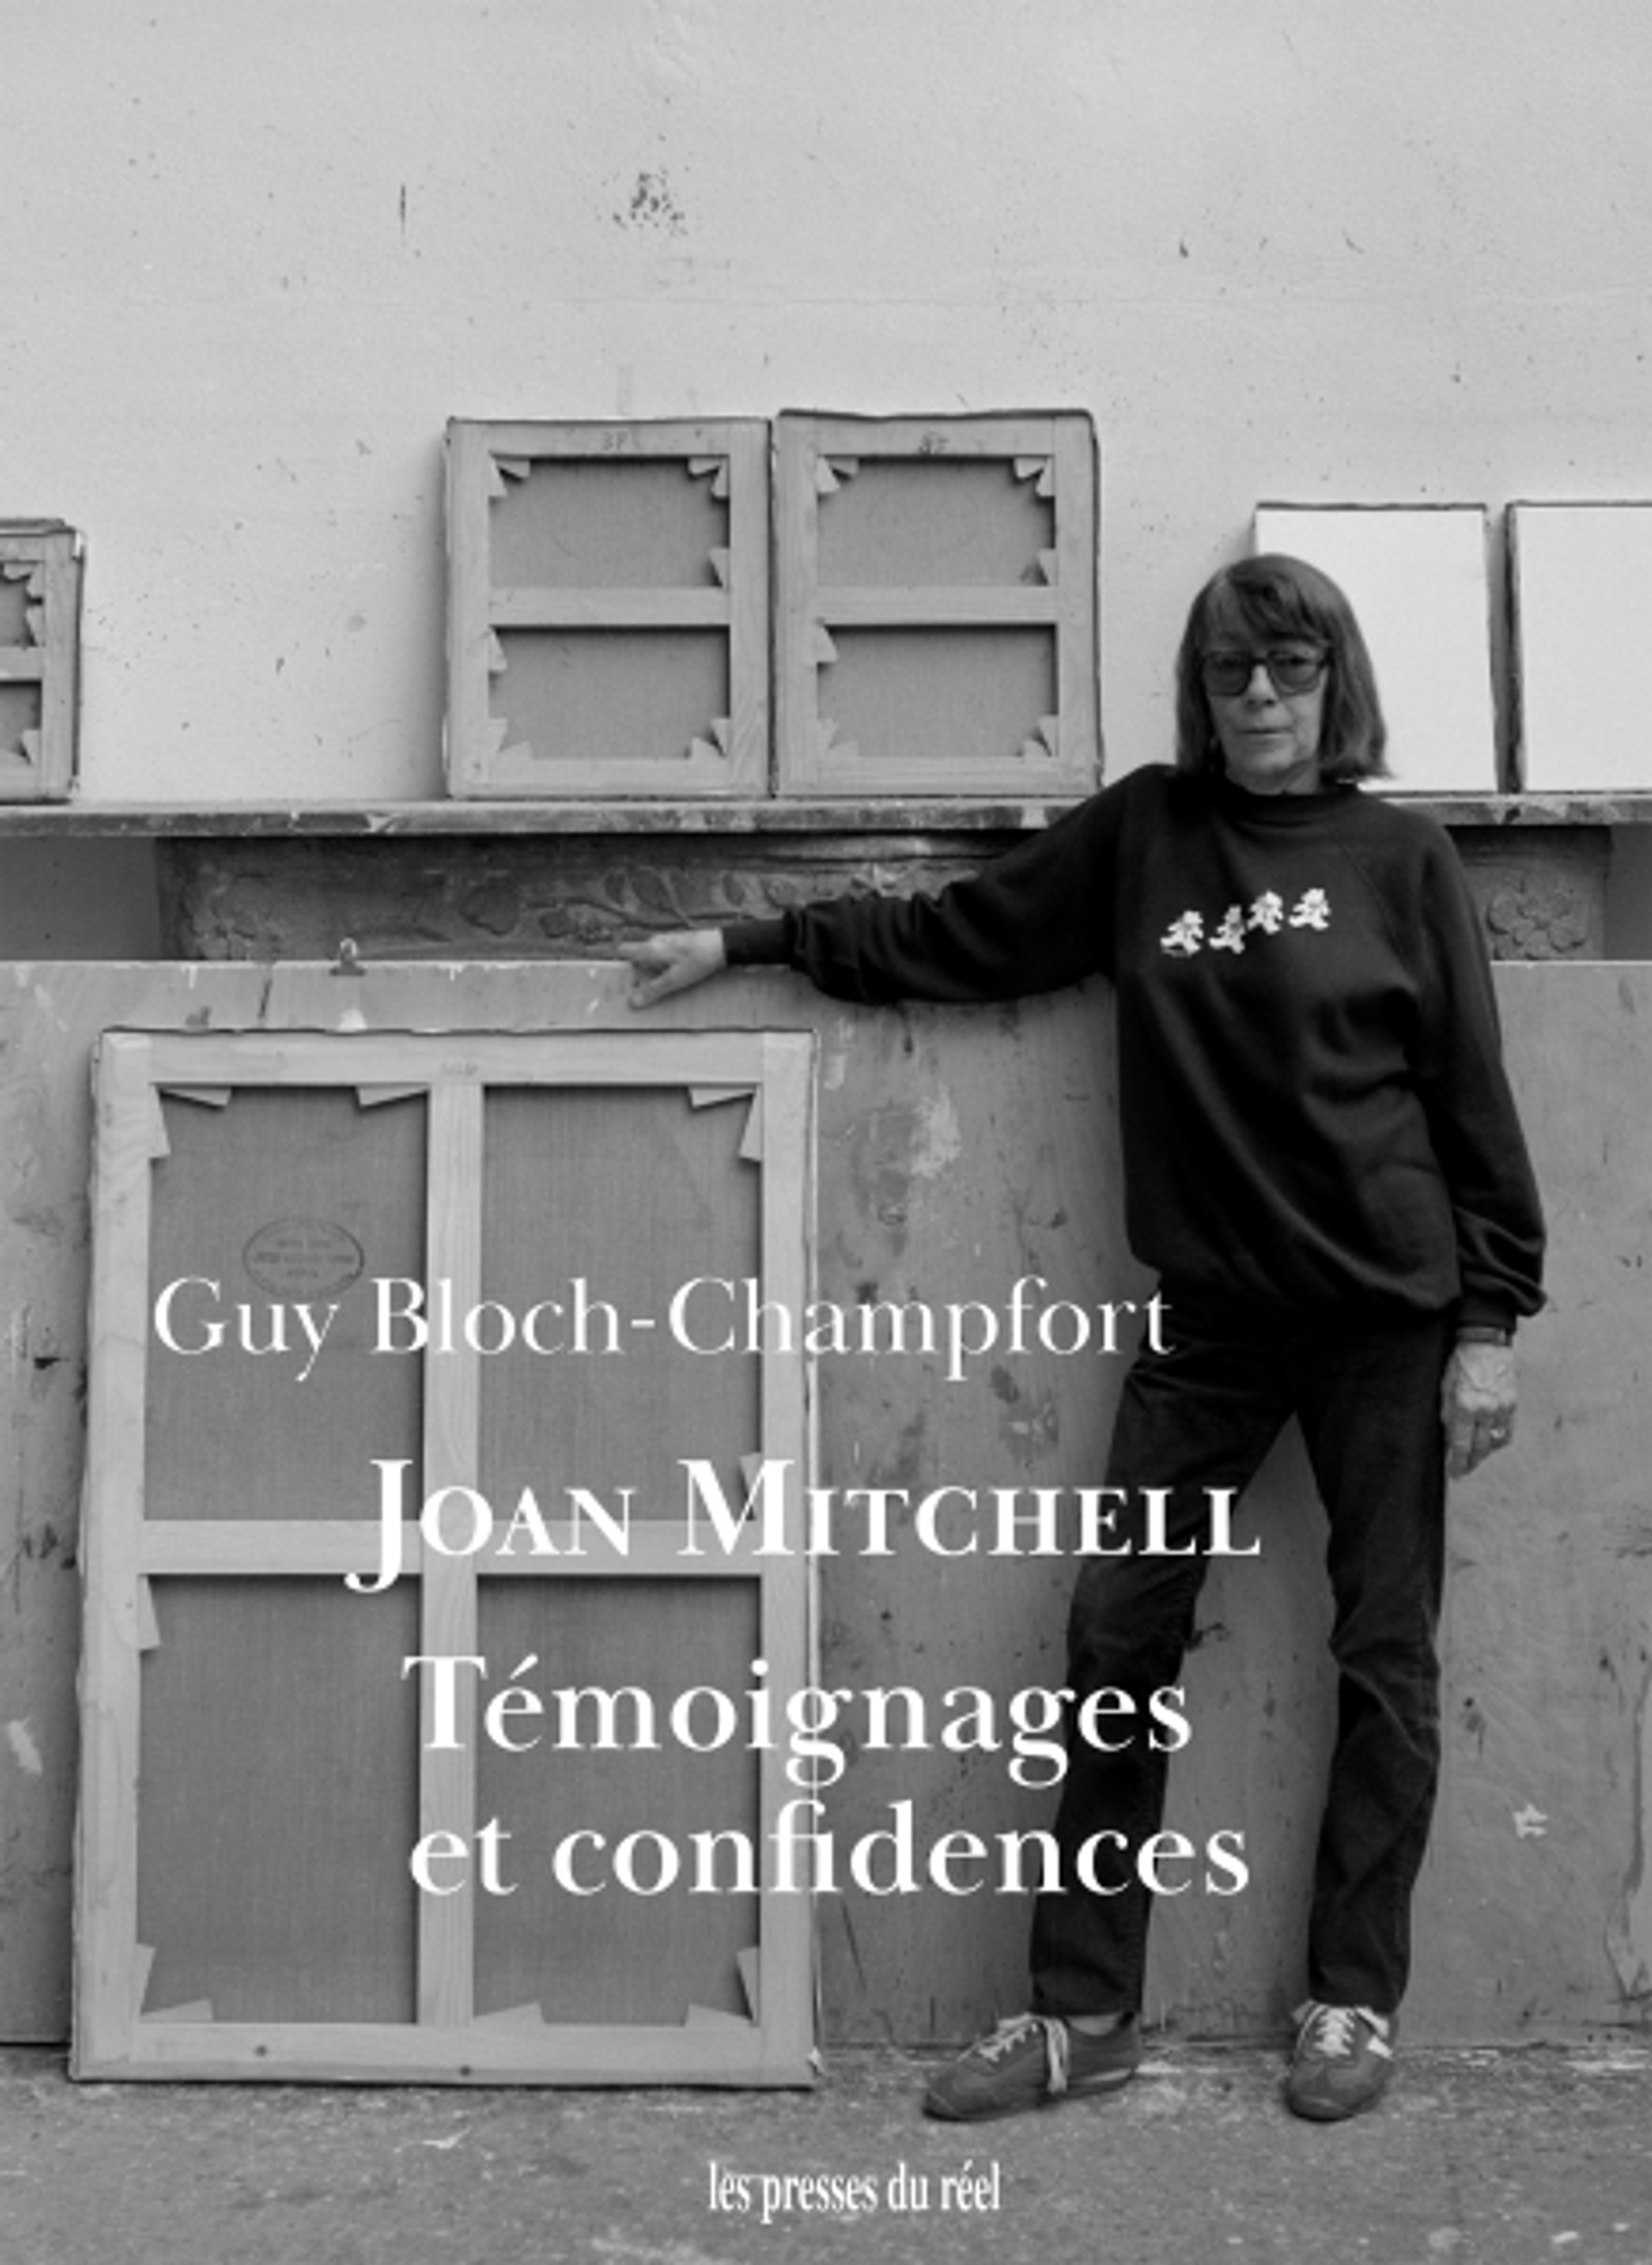 Guy Bloch-Champfort, Joan Mitchell. Témoignages et confidences, Dijon, Les presses du réel, 2022, 224 pages, 24 euros.